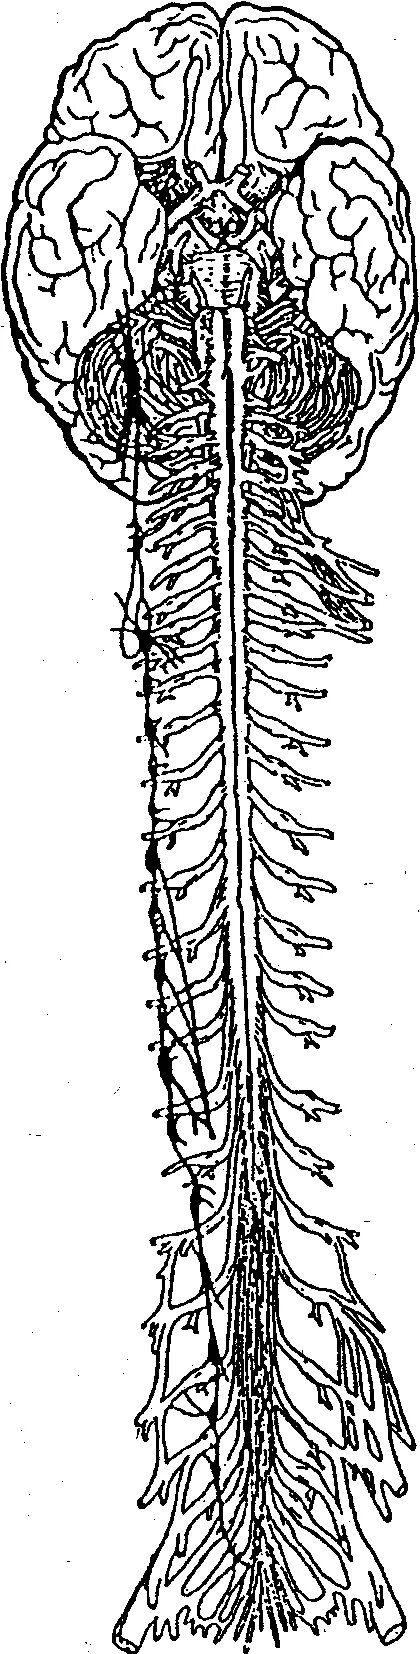 Нервная система человека спинной мозг. Позвоночный столб и спинной мозг. Головные и спинные нервы. Головной и спинной мозг рисунок.